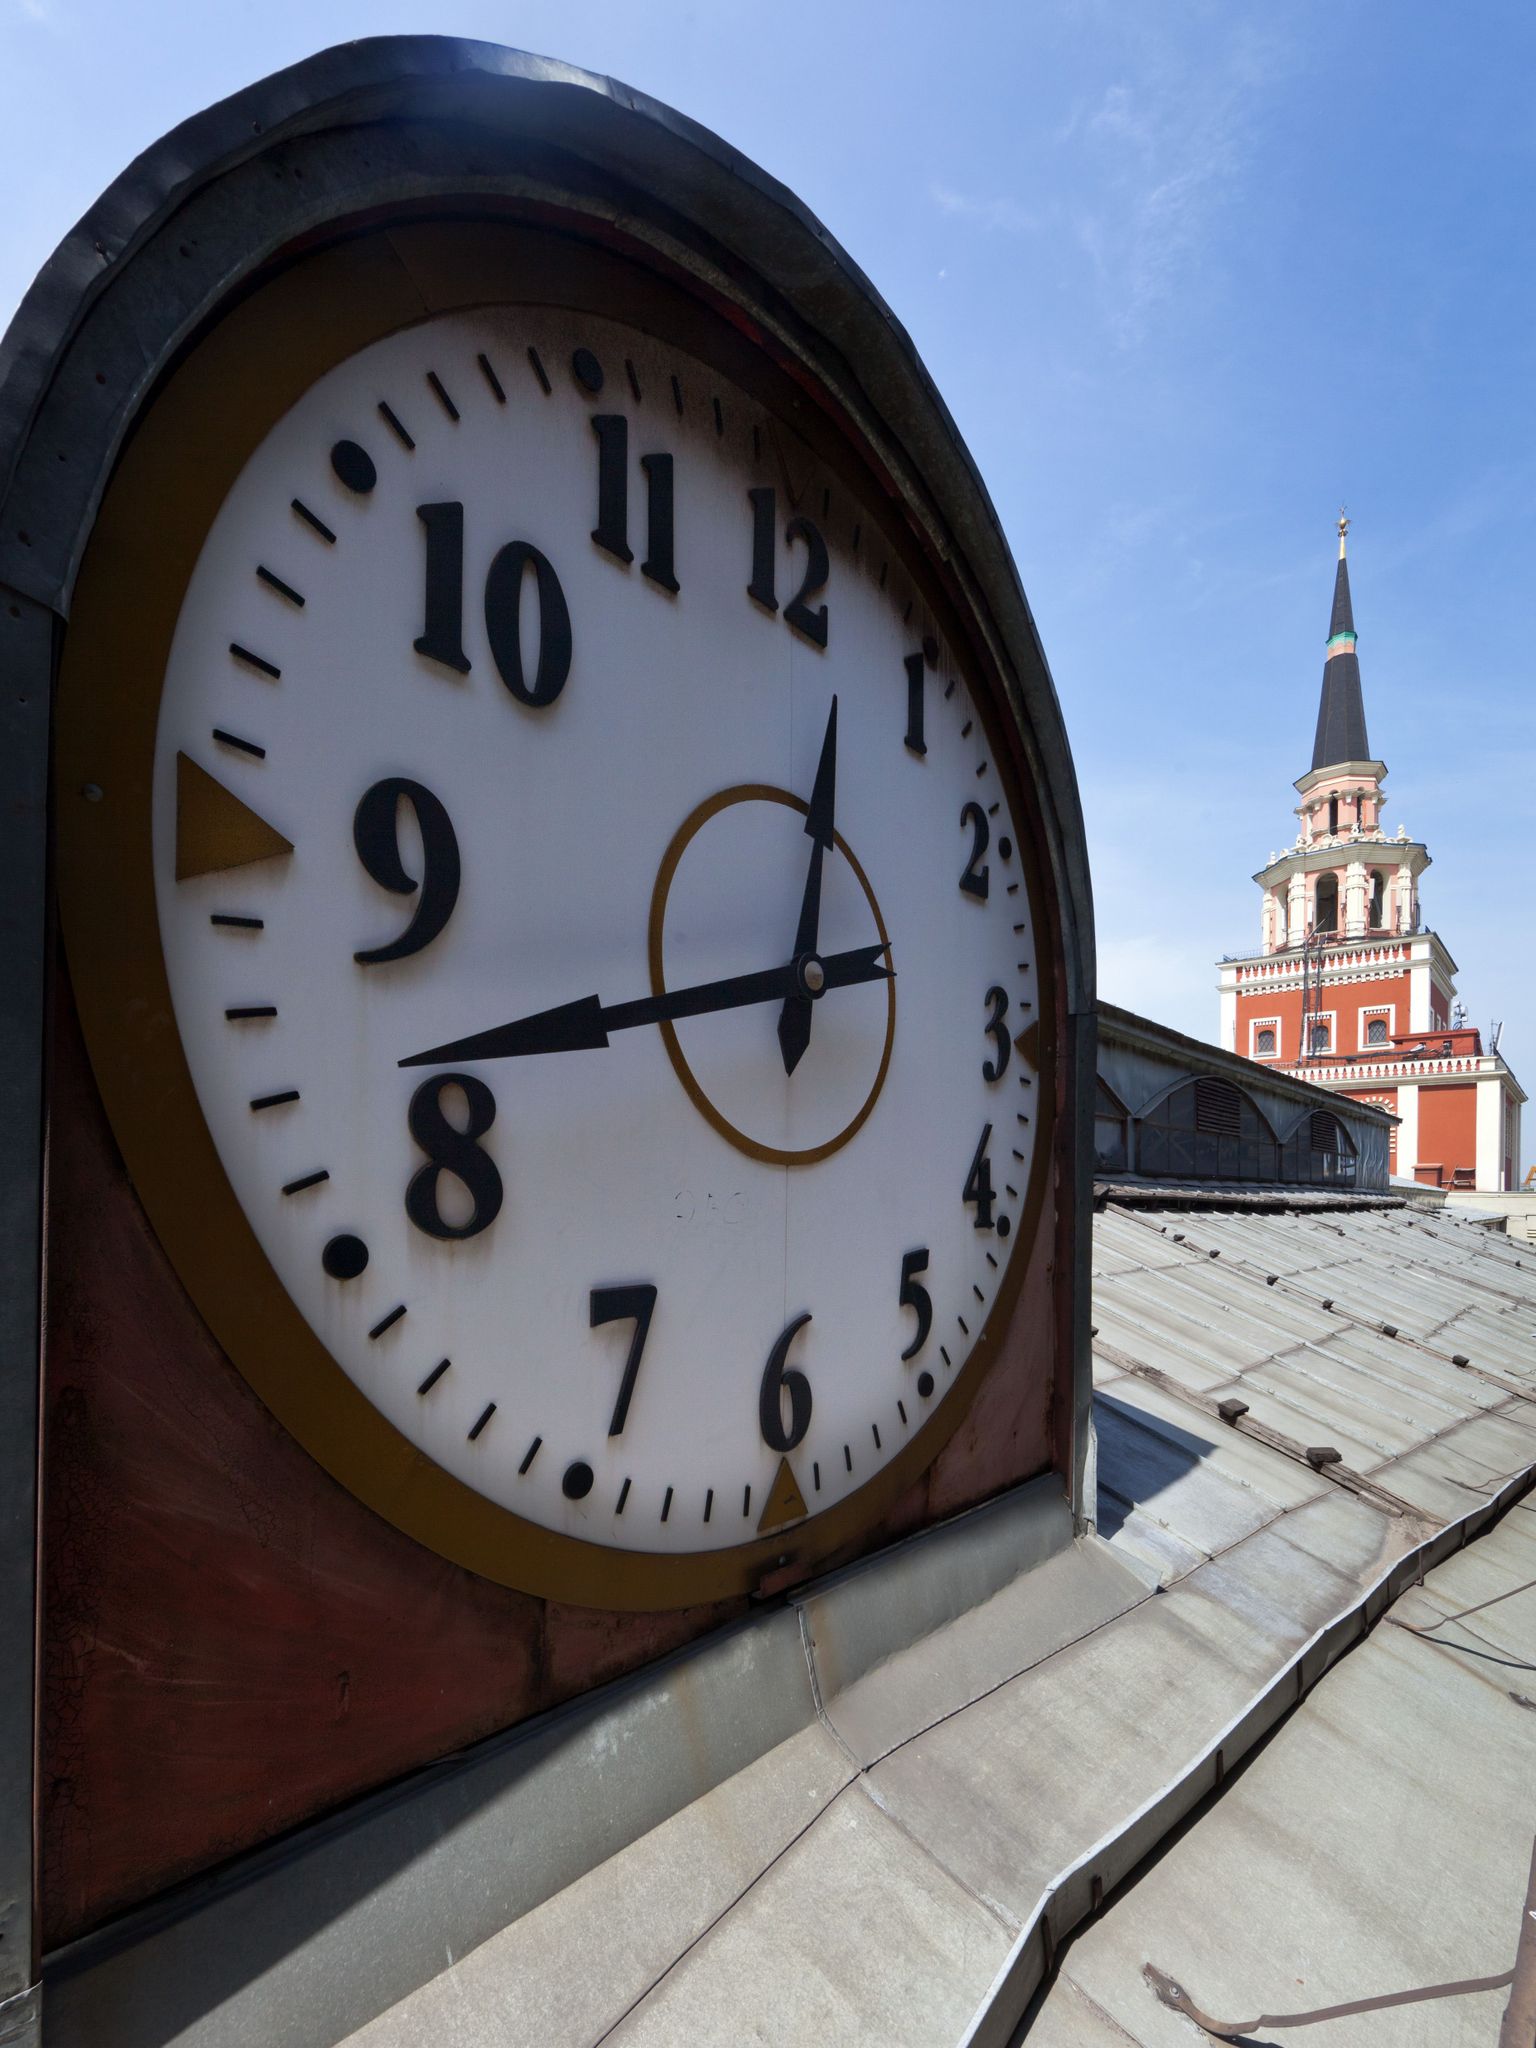 Башенные часы Казанского вокзала. Часы на здании Казанского вокзала. Часы Москва. Московские часы.